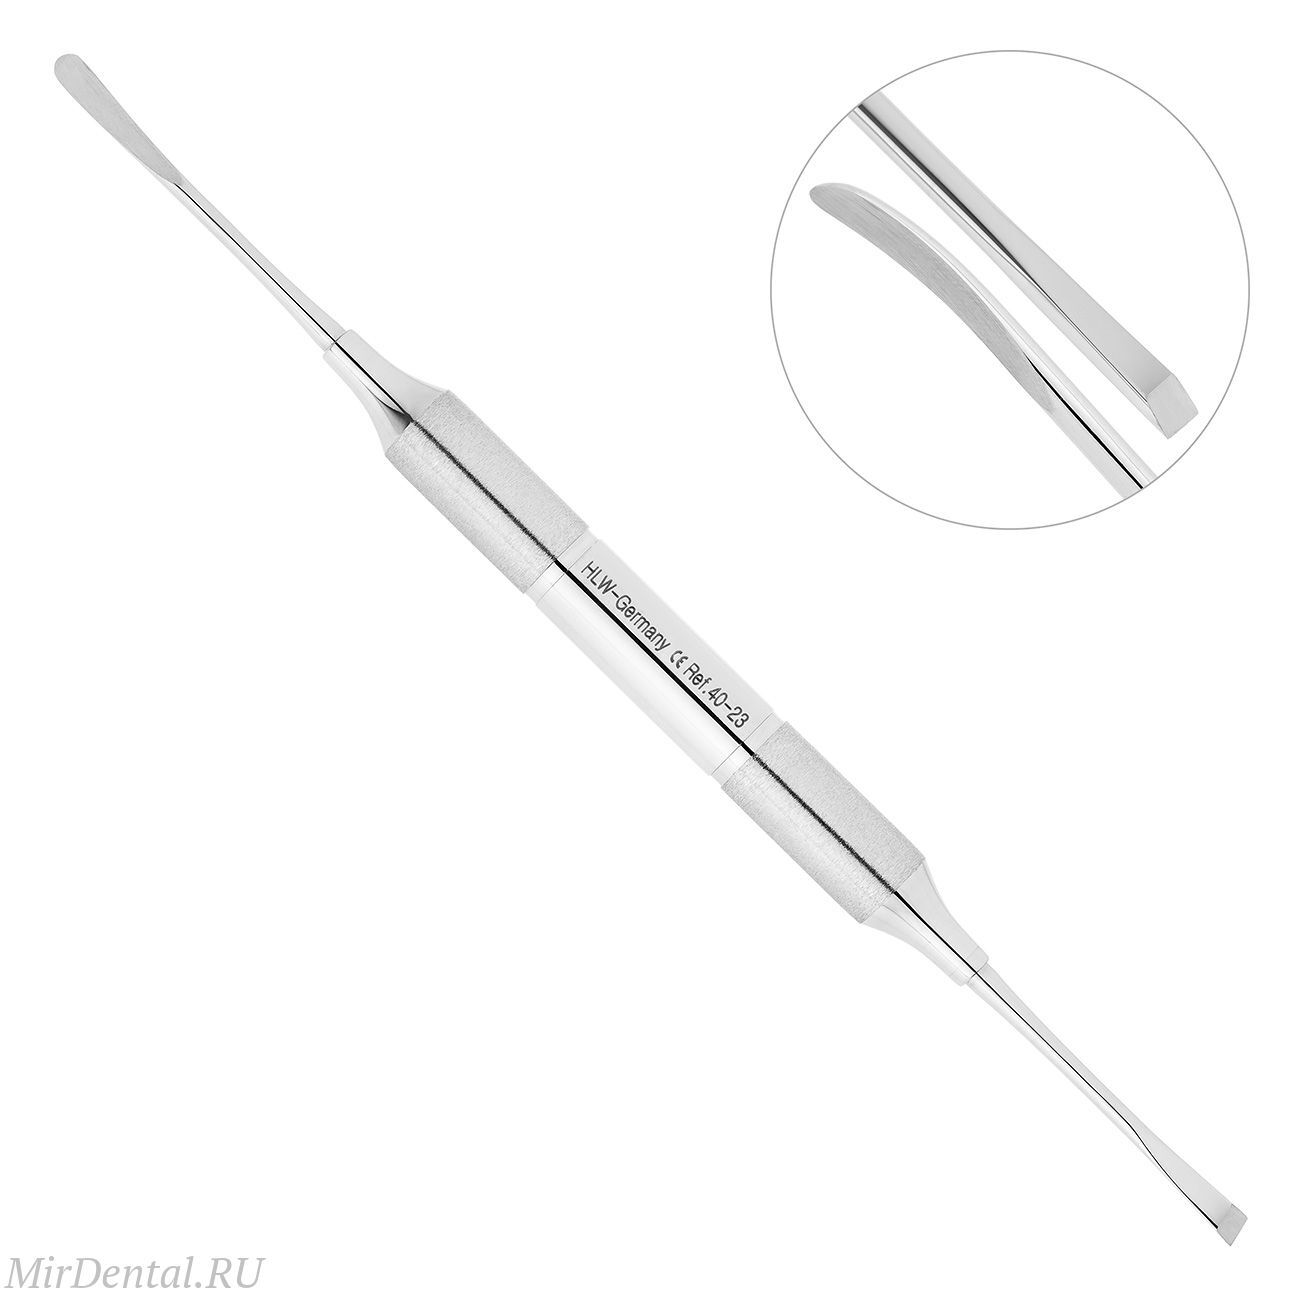 Распатор, ручка DELUXE, диаметр 10 мм, 3,5-3,5 мм, 40-23*